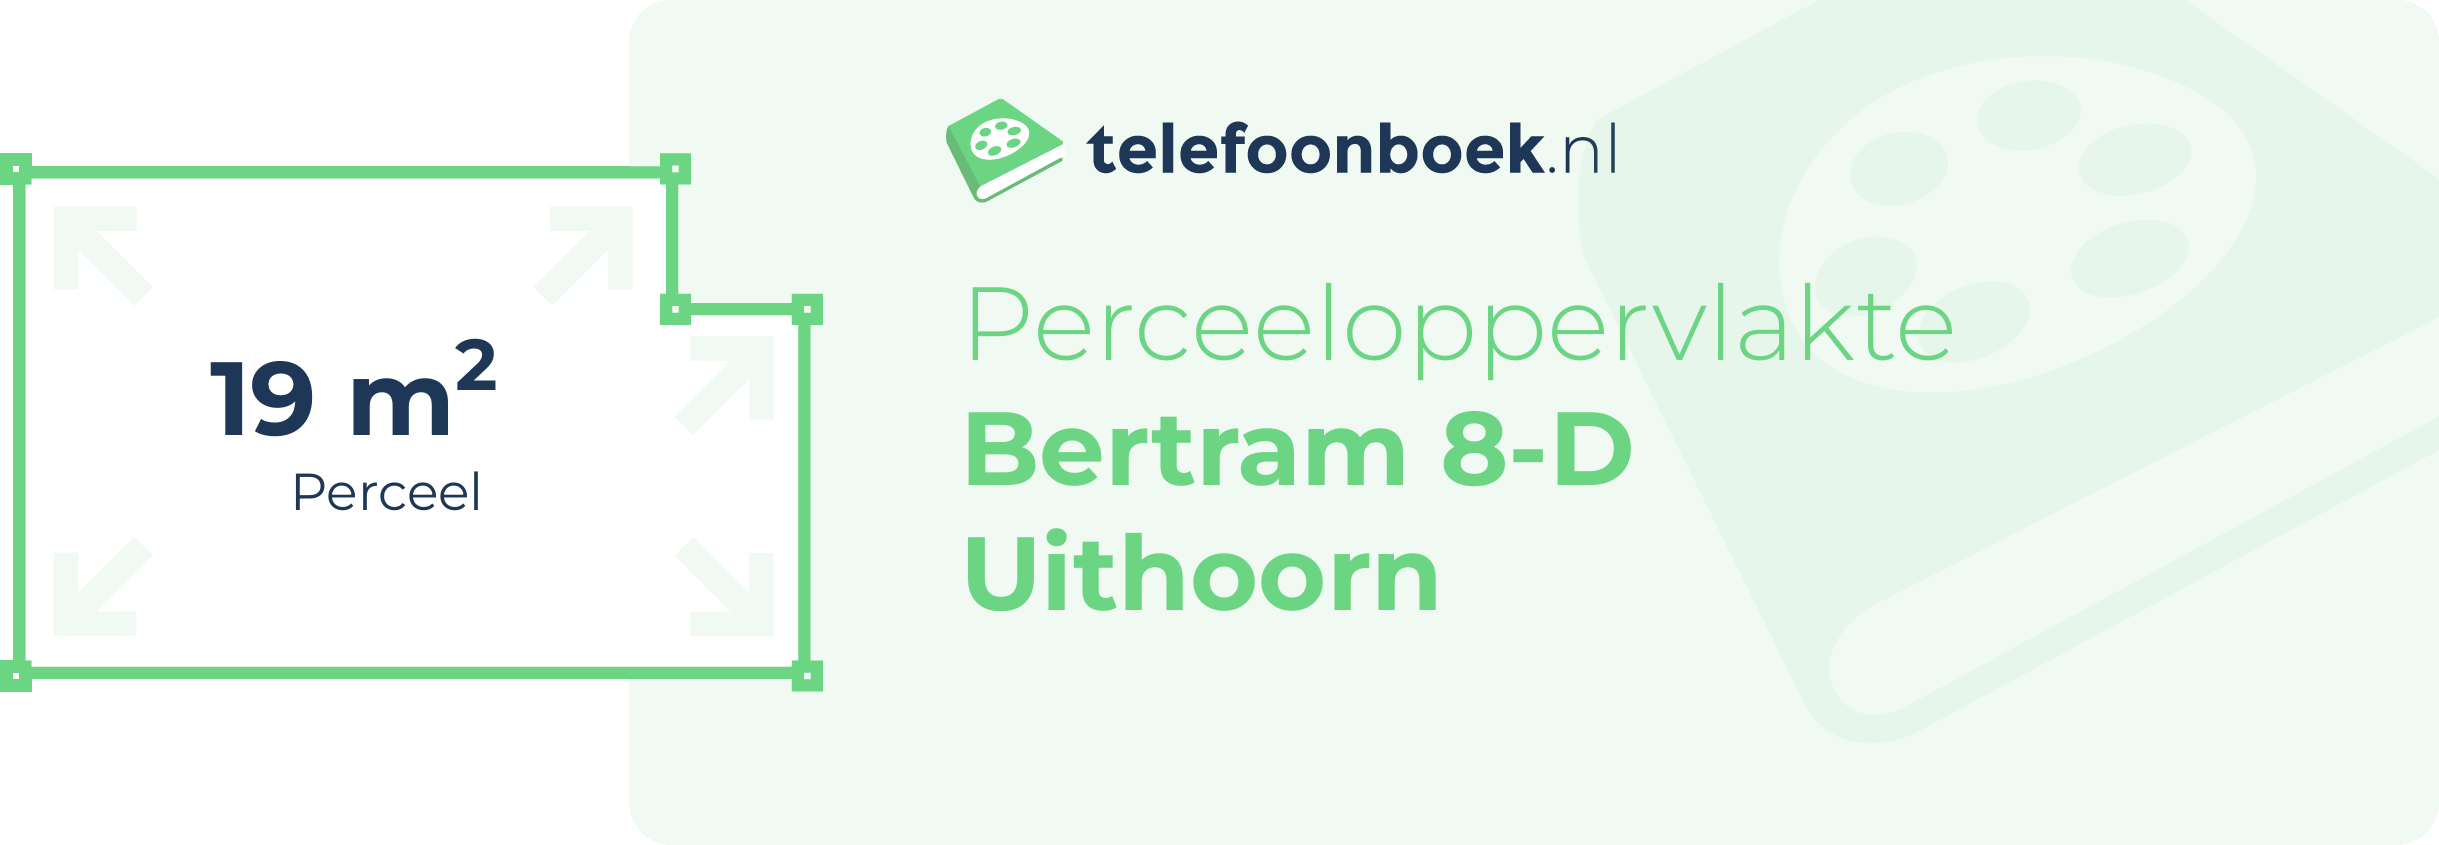 Perceeloppervlakte Bertram 8-D Uithoorn